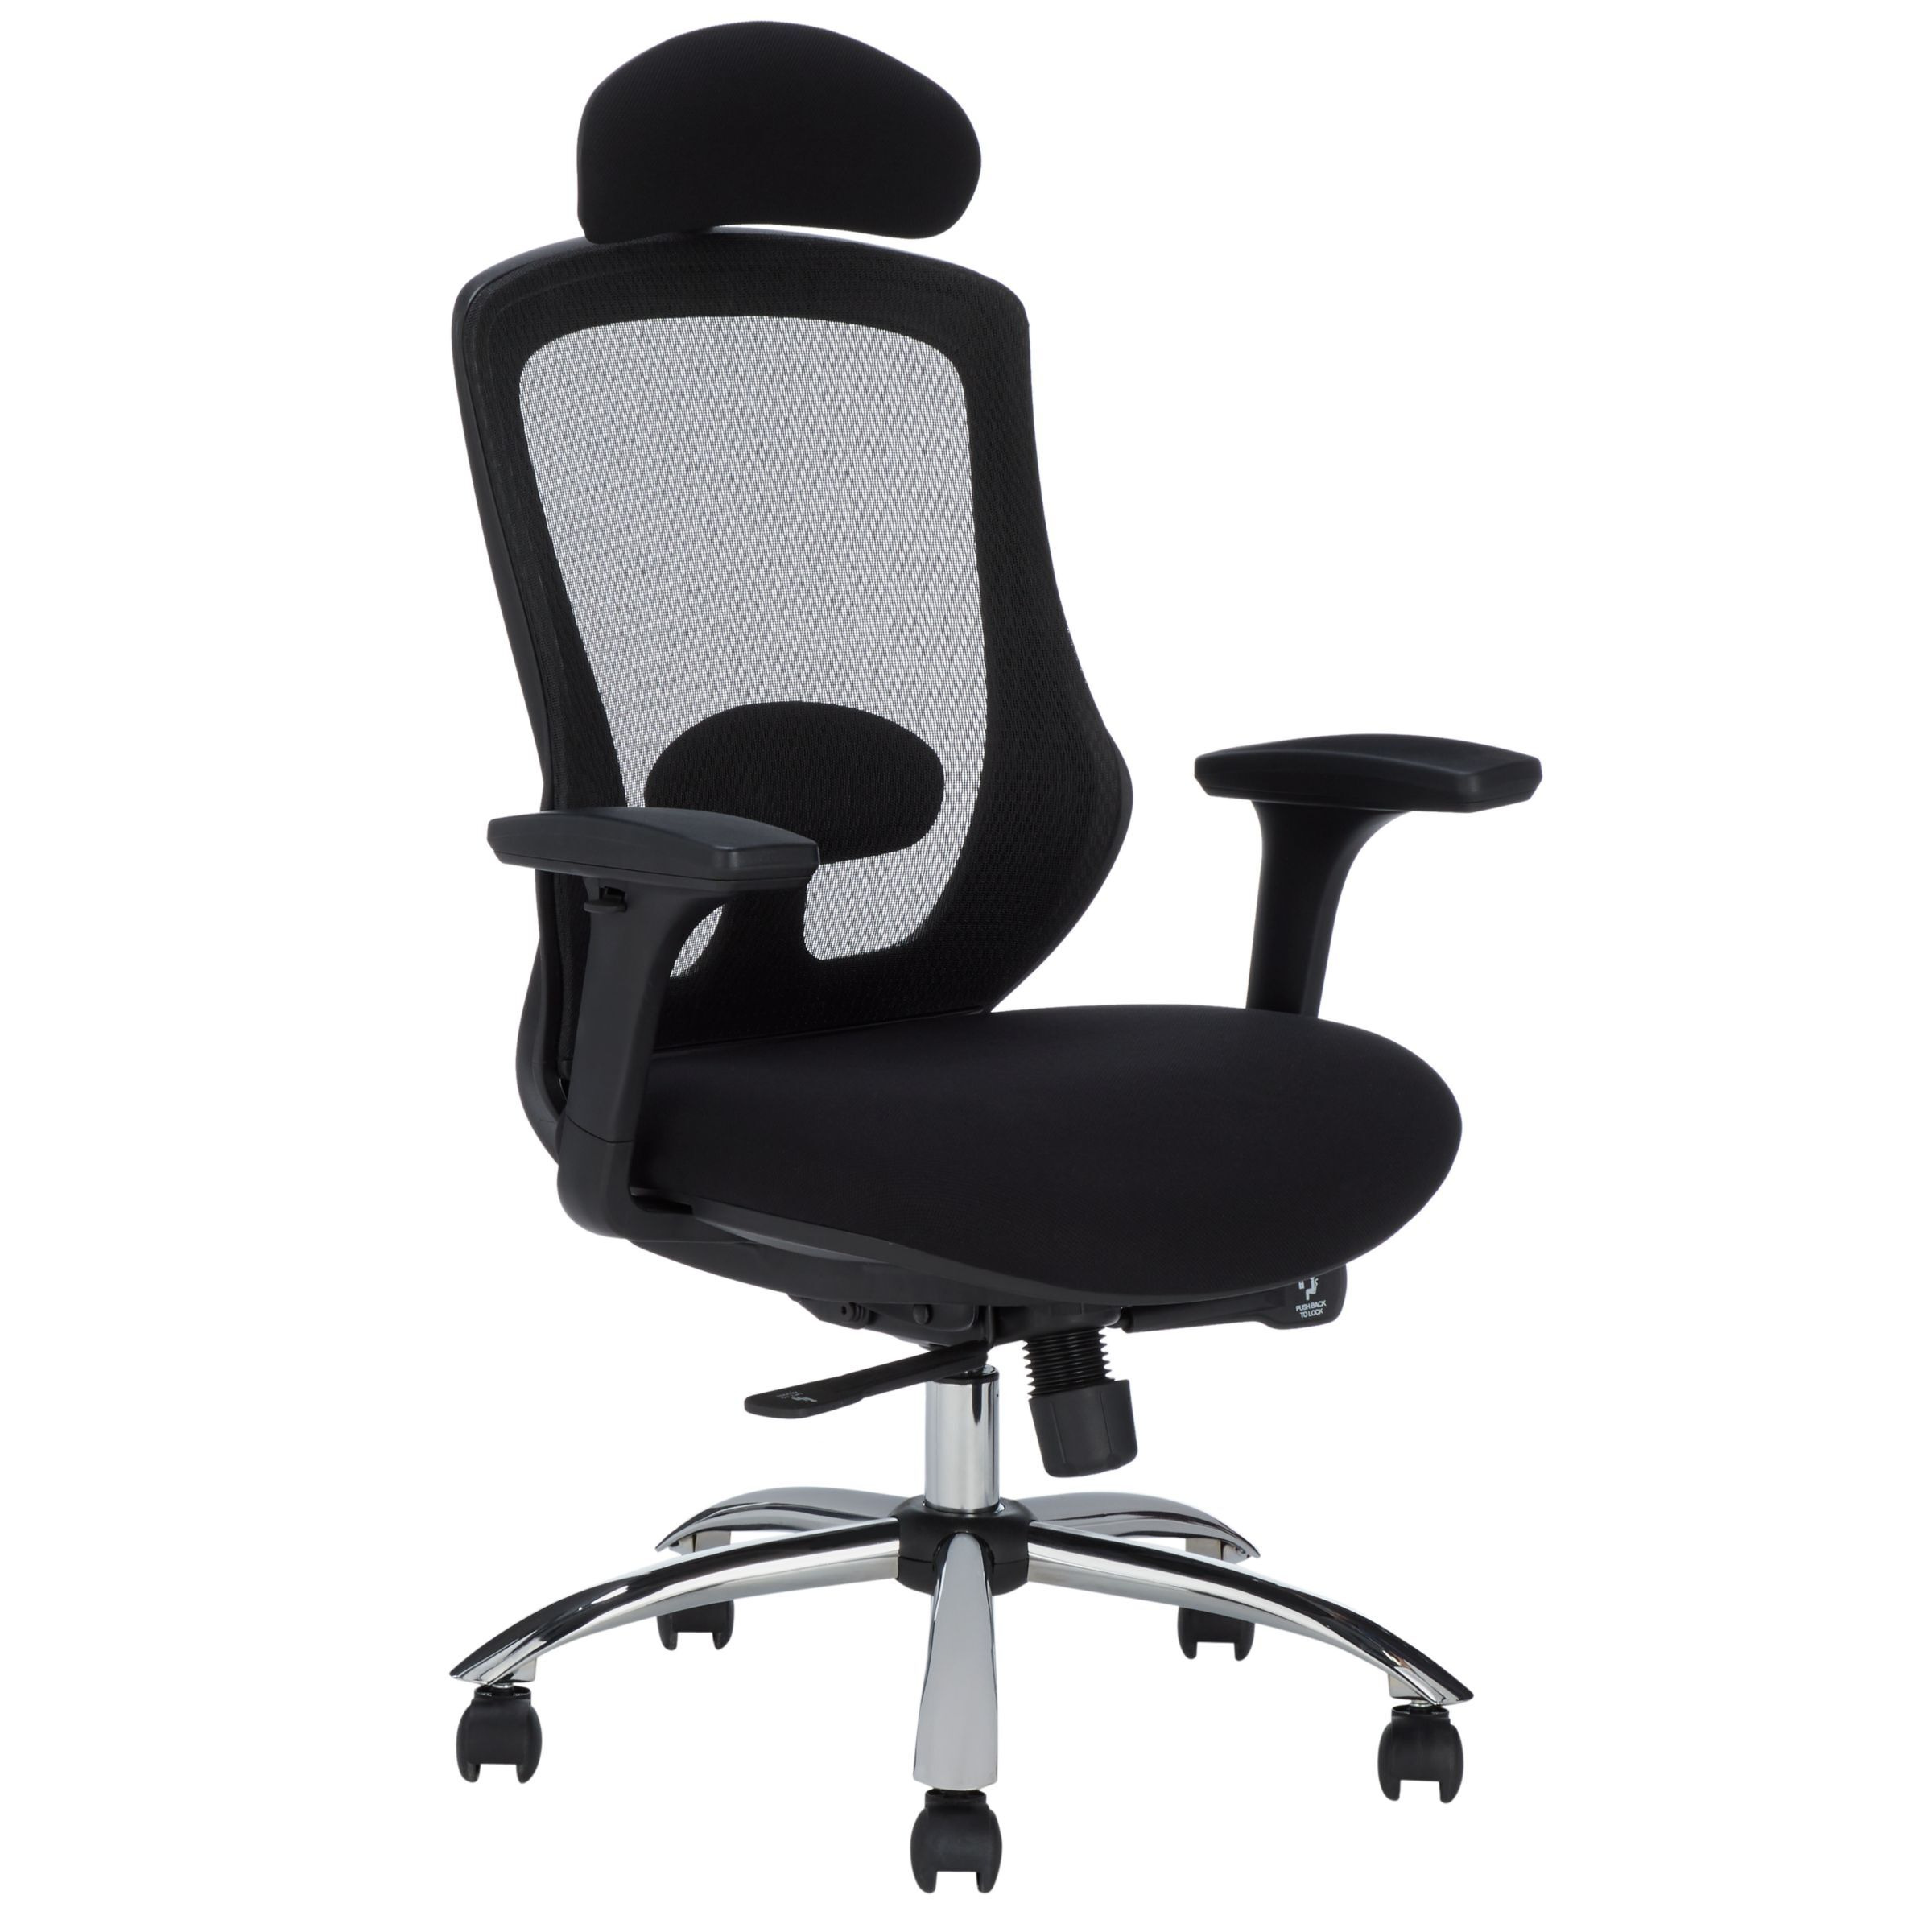 John Lewis Isaac Ergonomic Office Chair, Black - image 1